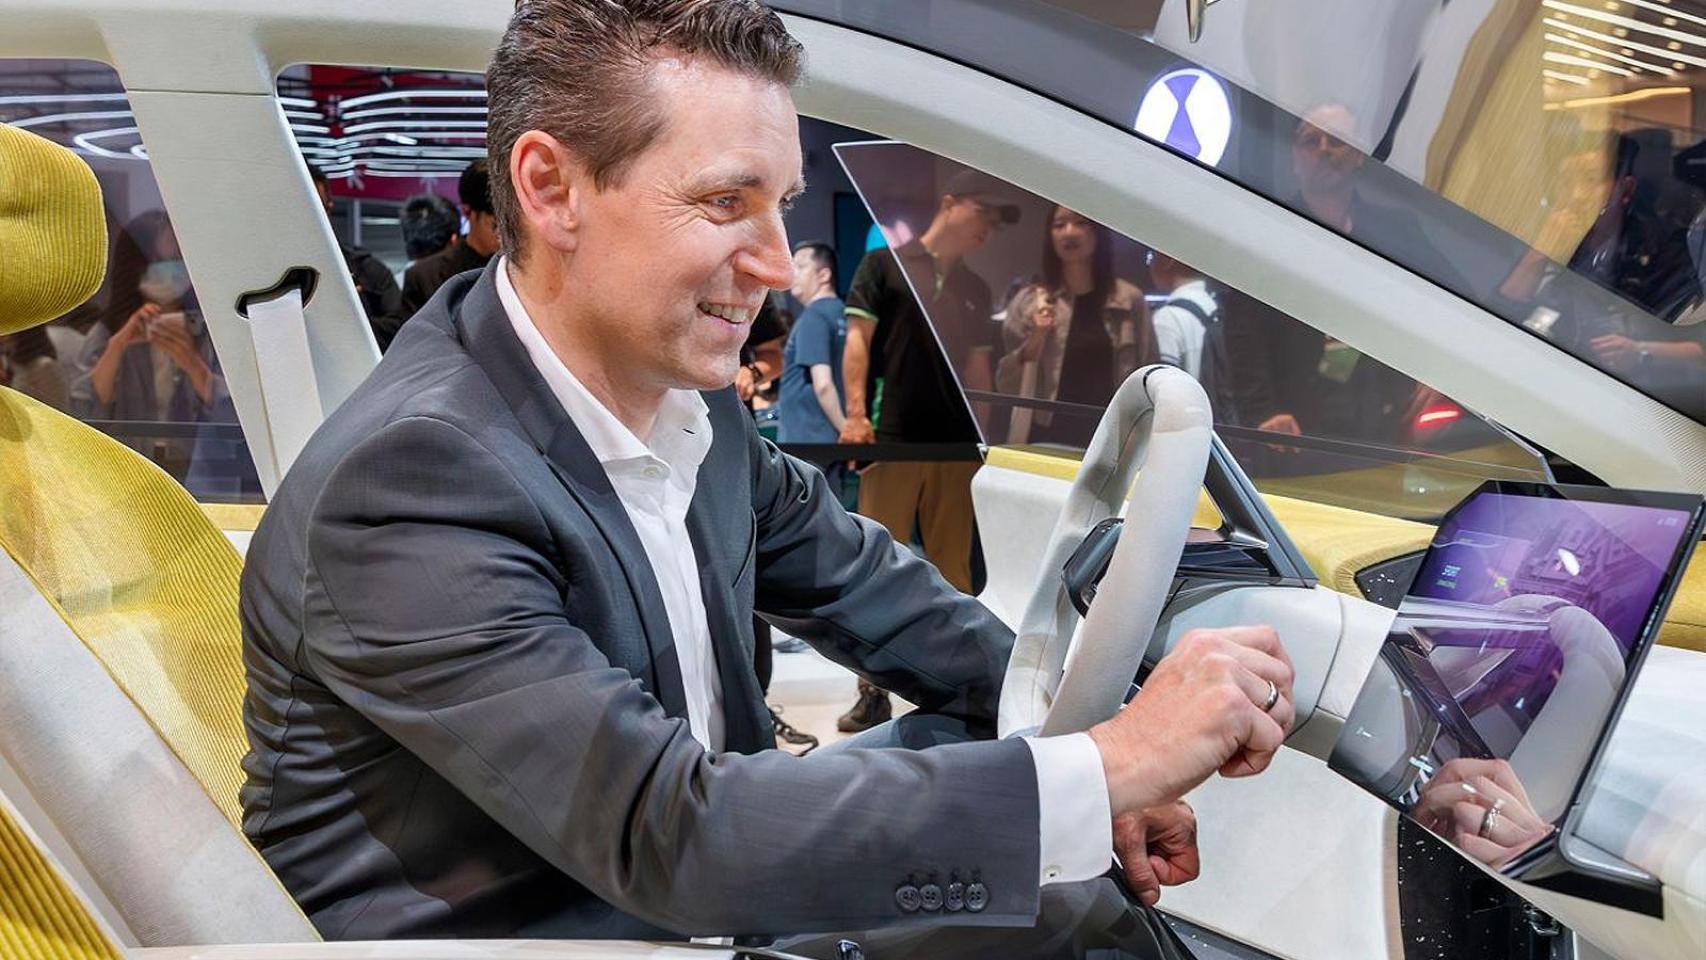 Bernd Koerber es el vicepresidente senior de marca, producto y conectividad de BMW.